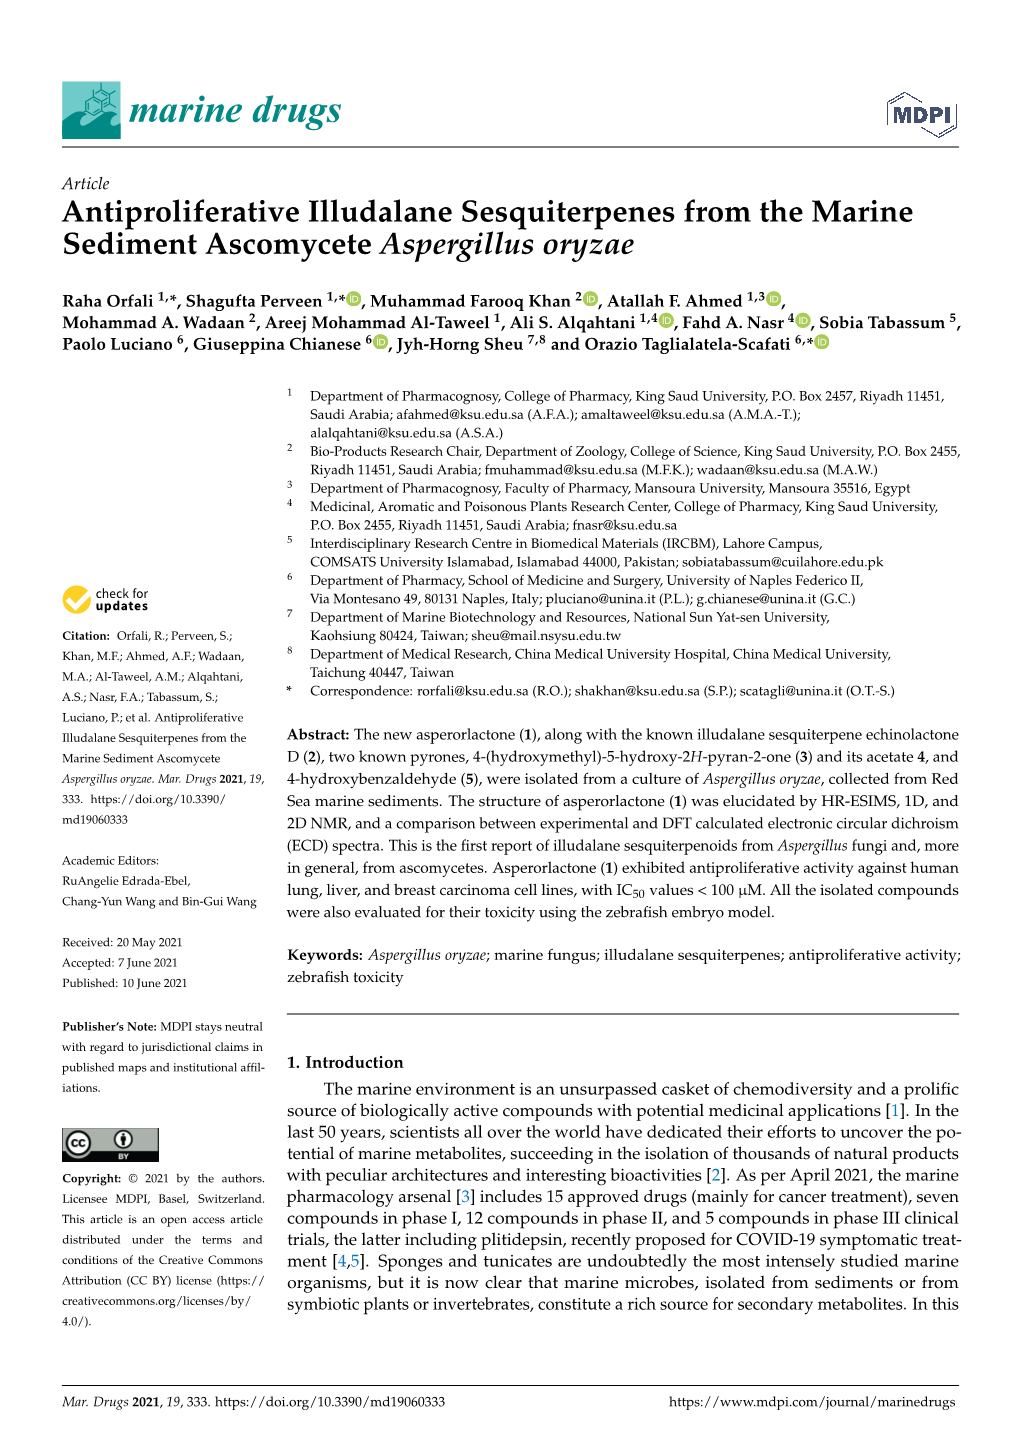 Antiproliferative Illudalane Sesquiterpenes from the Marine Sediment Ascomycete Aspergillus Oryzae